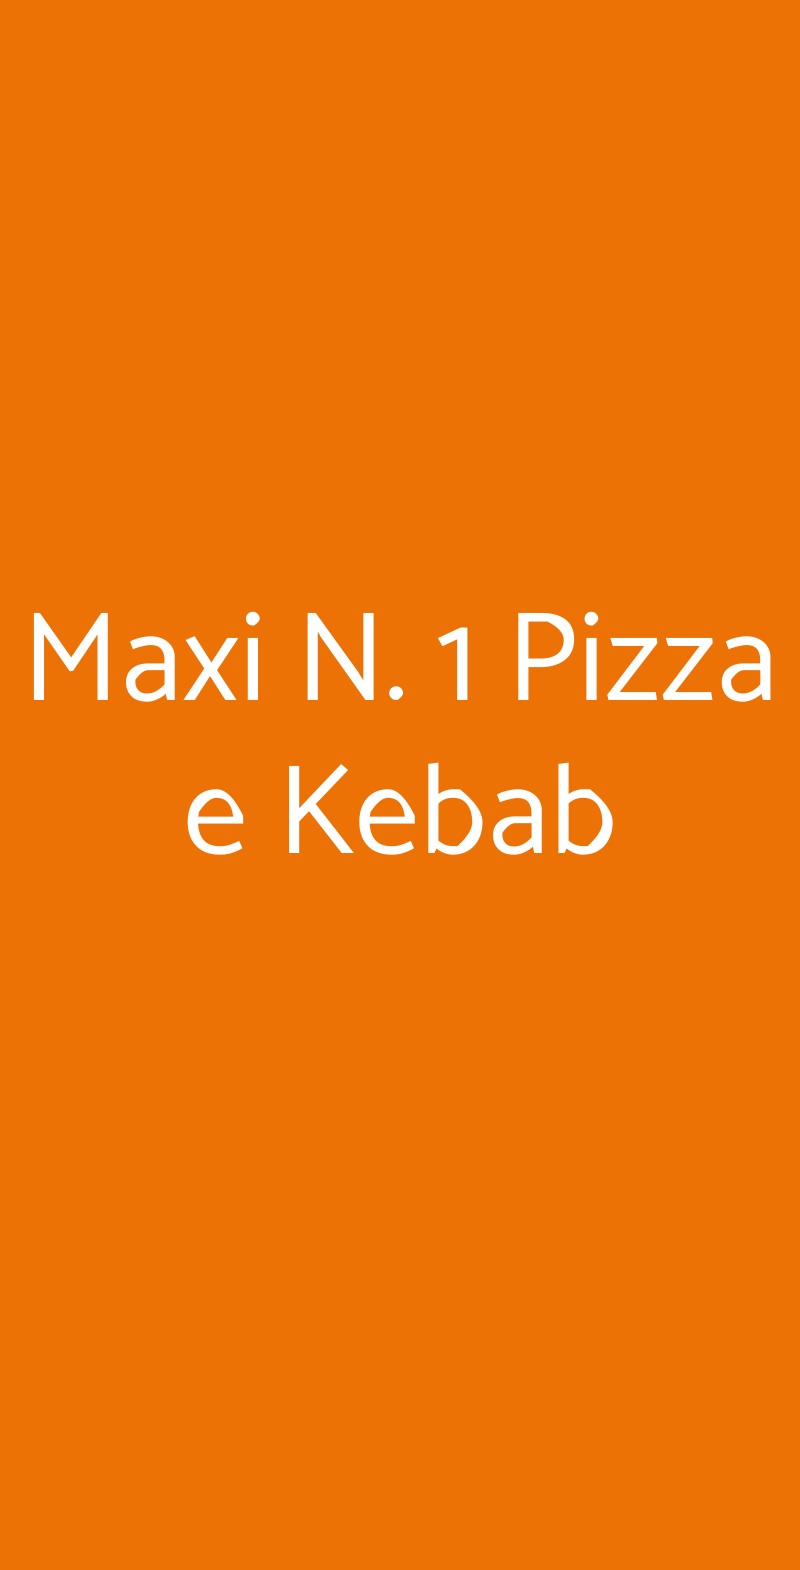 Maxi N. 1 Pizza e Kebab Venezia menù 1 pagina